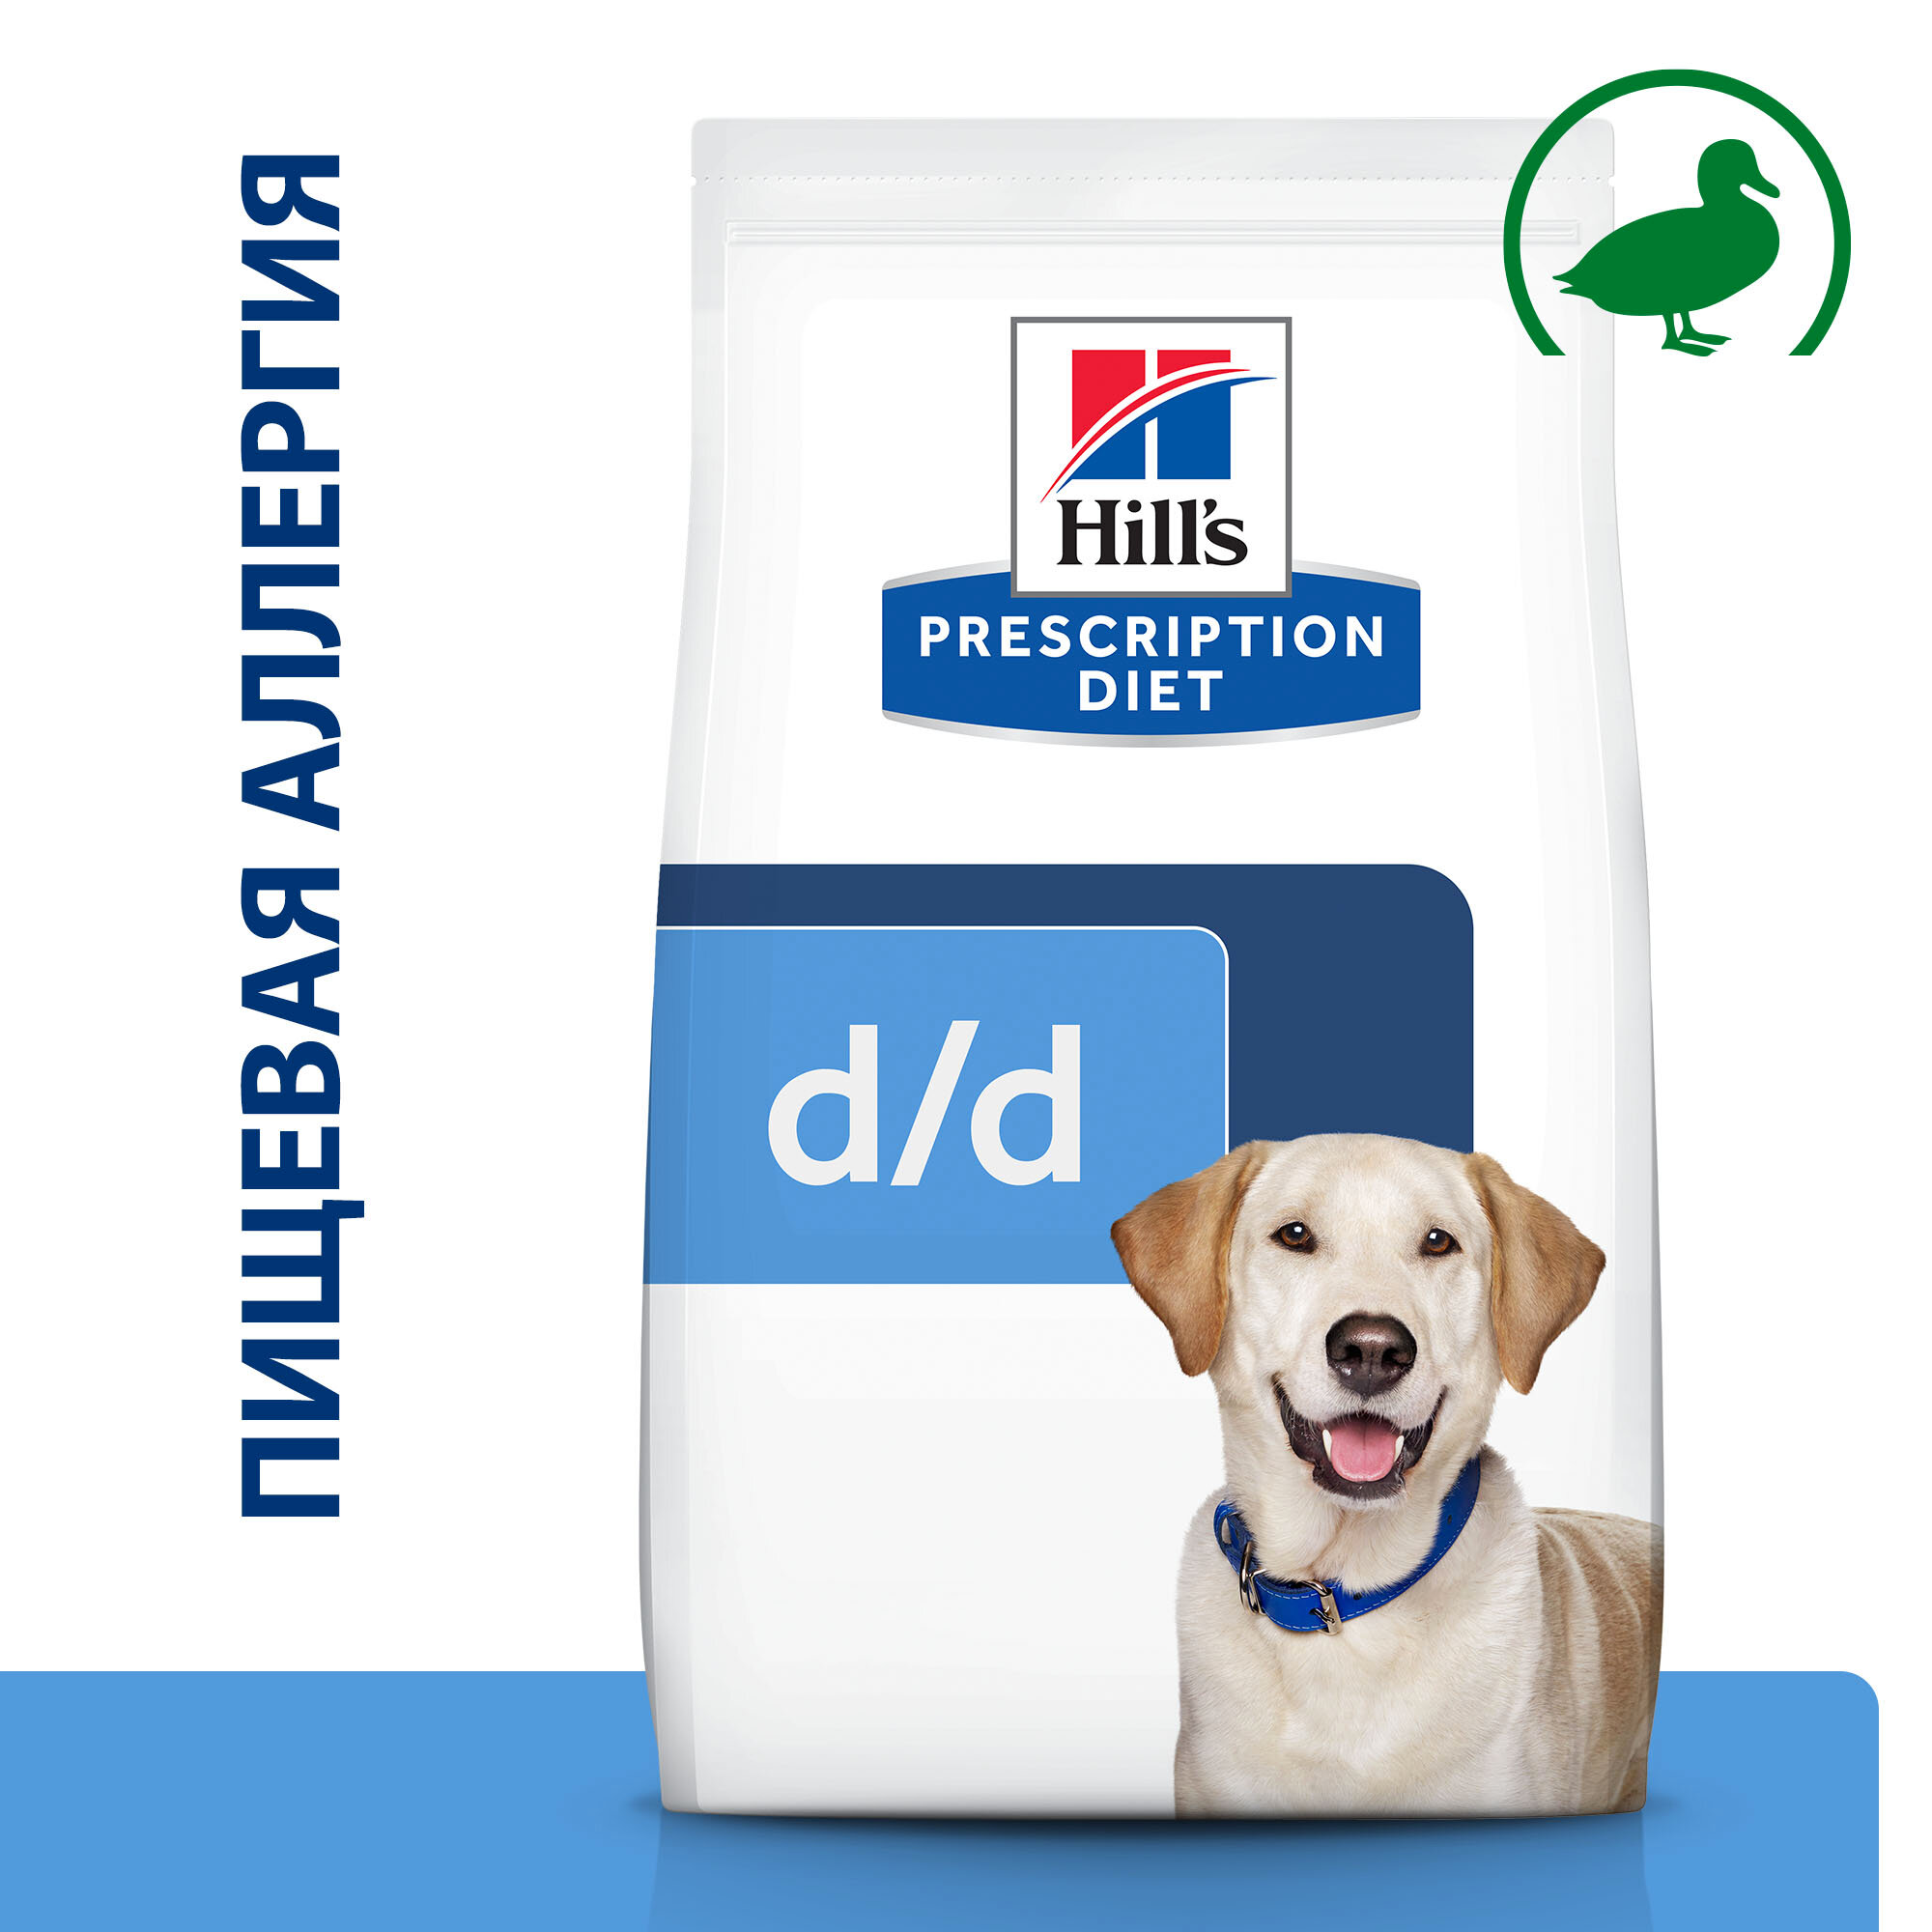 Hill's сухой корм для собак D/D Утка/рис полноценный диетический рацион при пищевых аллергиях 4кг